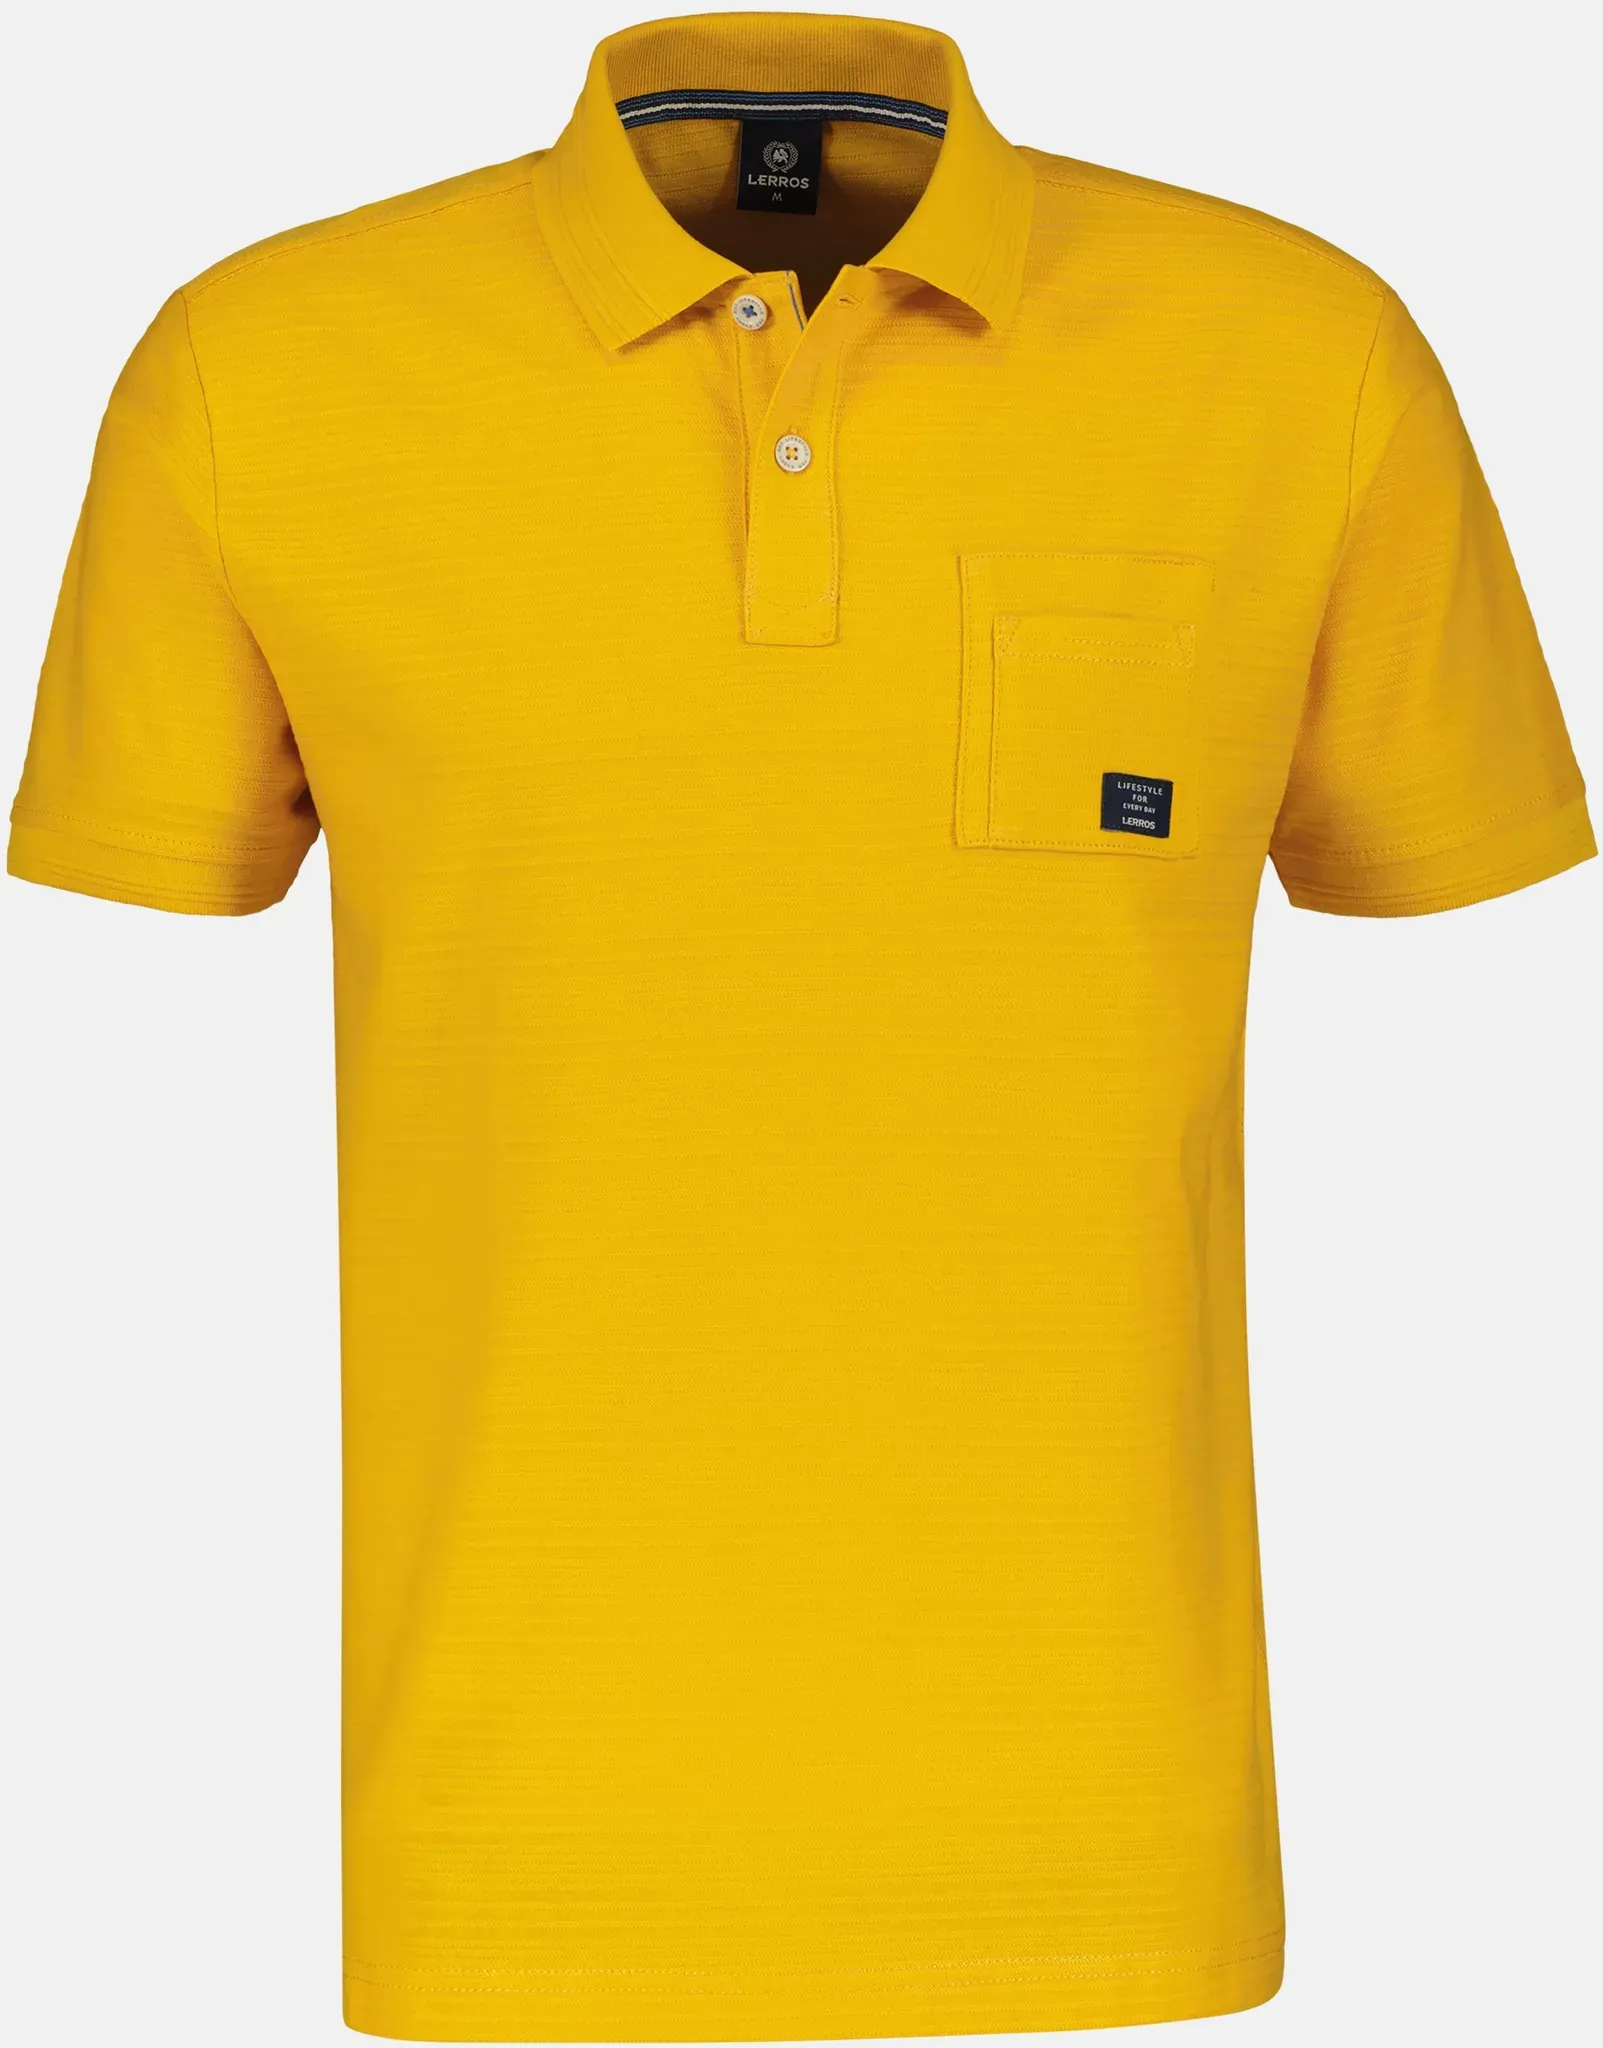 Herren Poloshirt mit aufgesetzter Brusttasche - Mango - XL